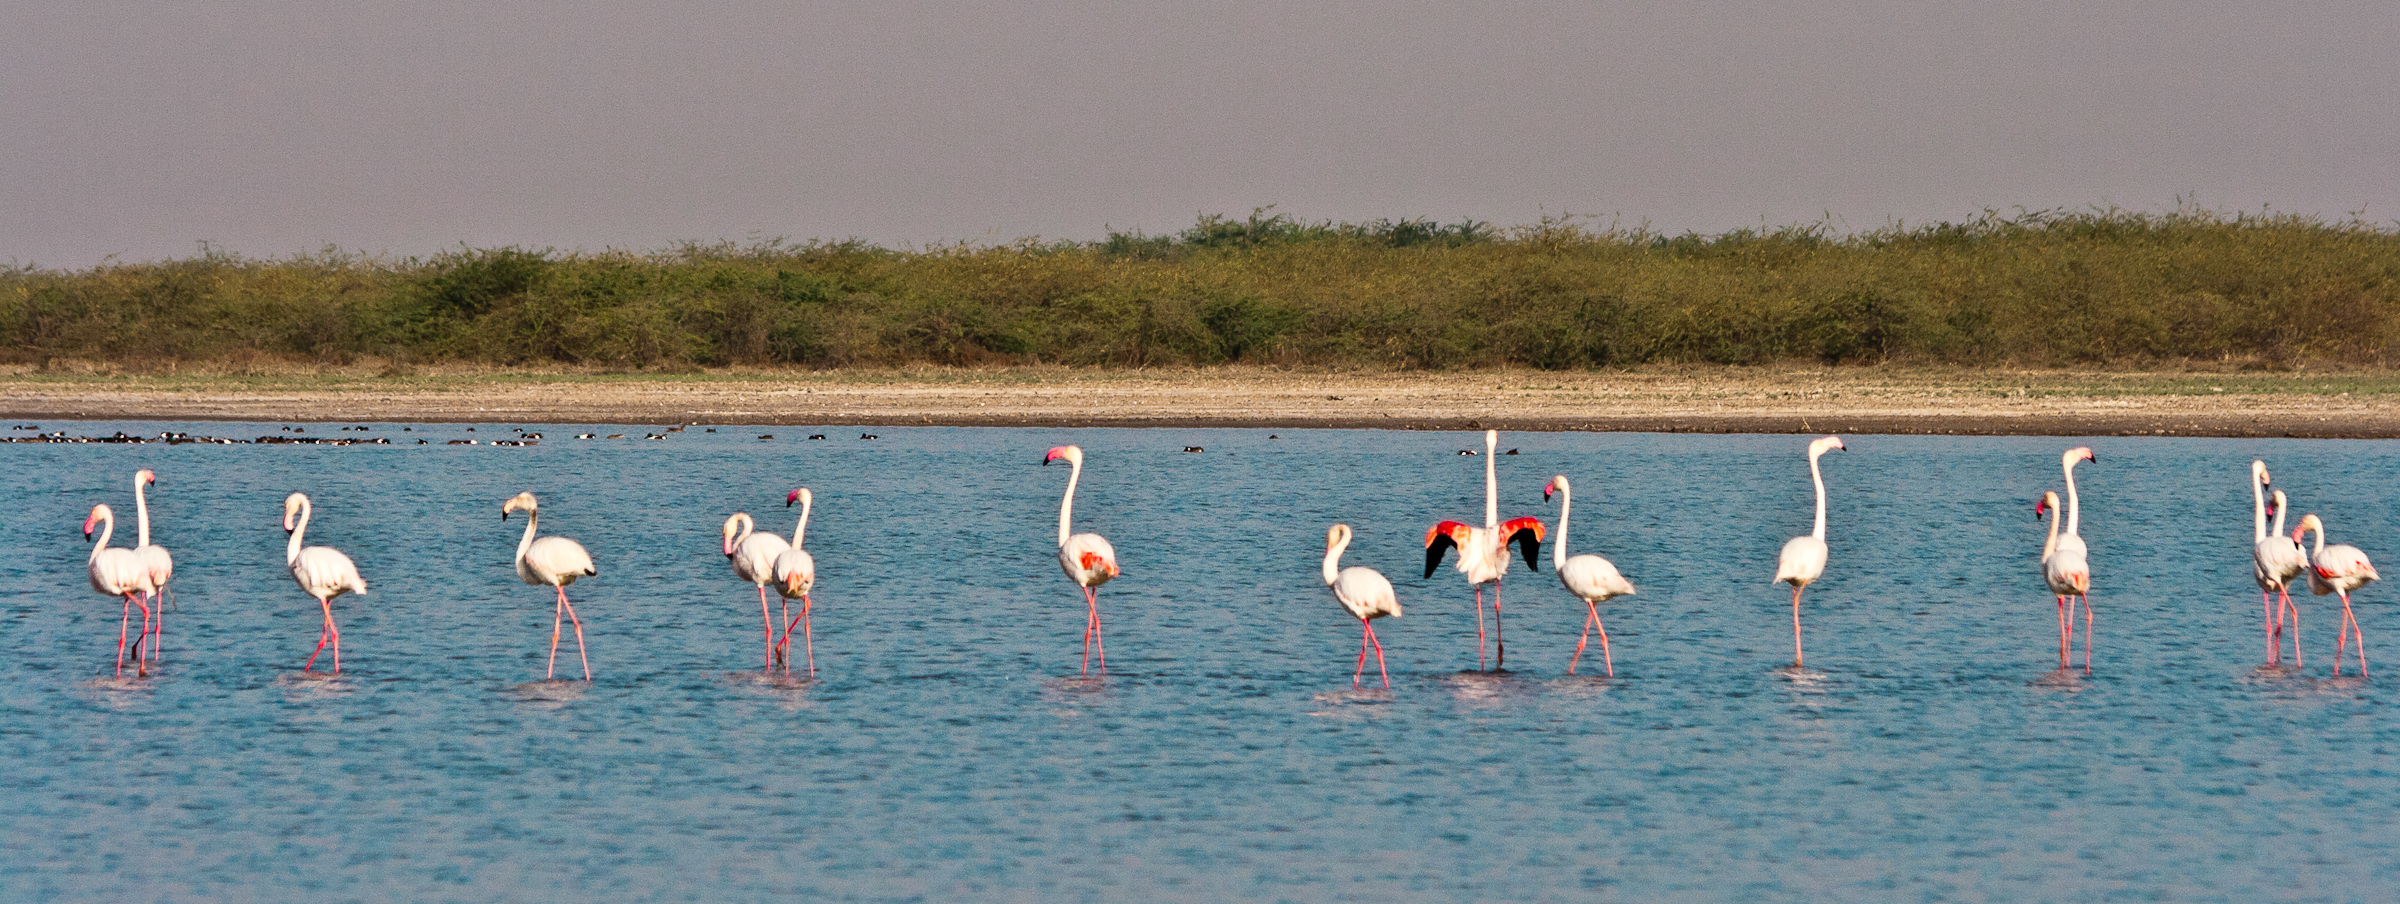 close encounter with flamingos